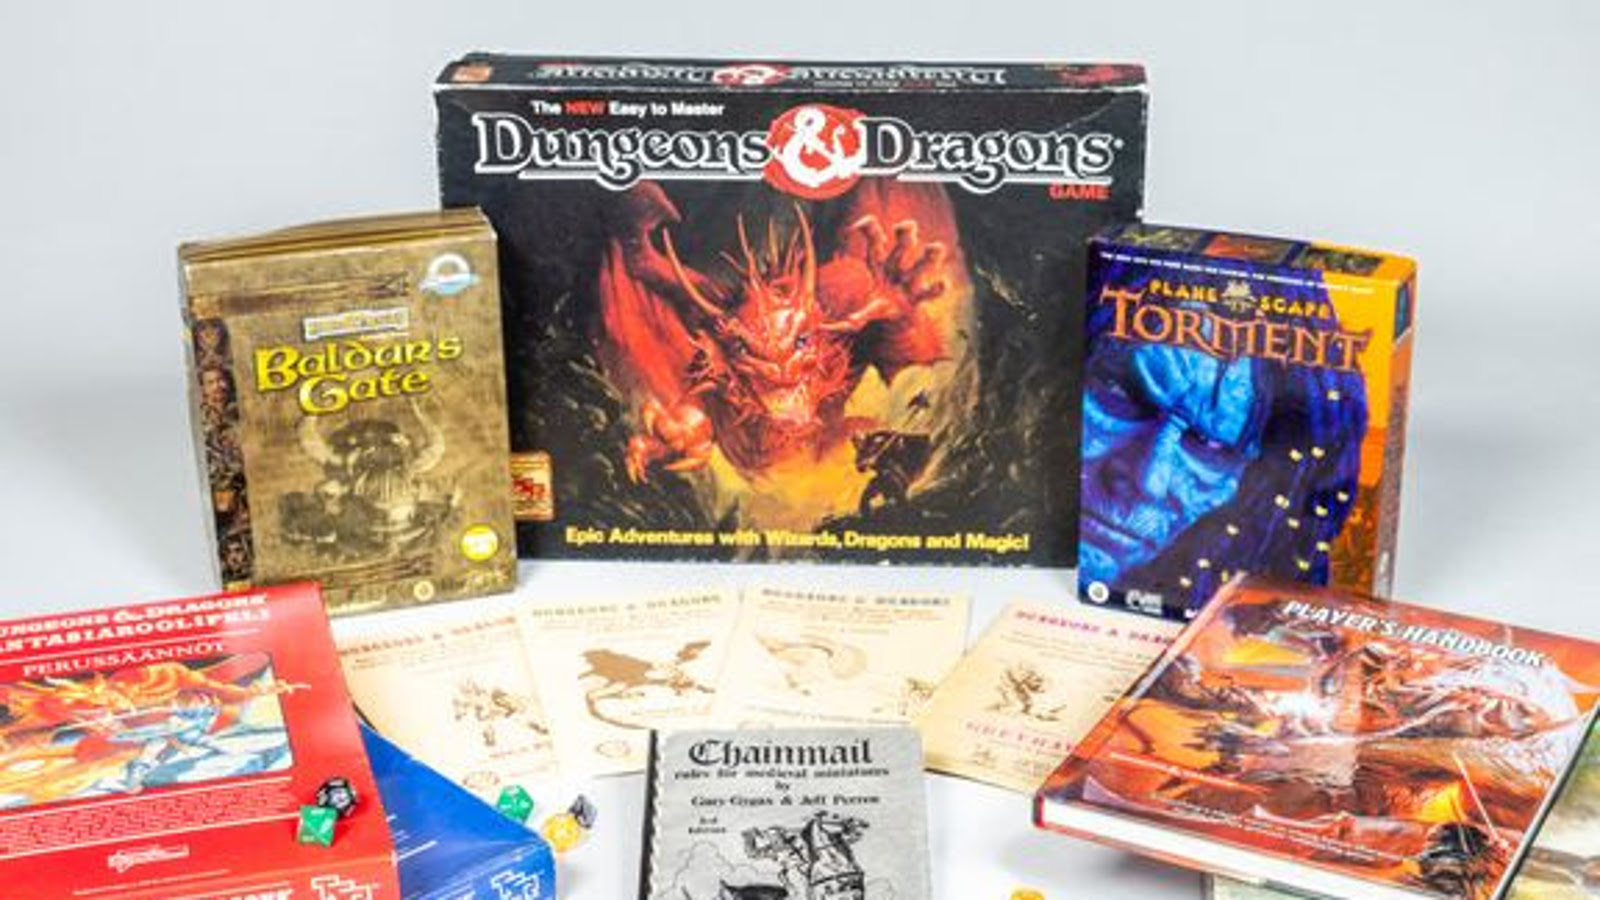 Kuvassa on keskimmäisenä Dungeons & Dragons -pelin paketti, jonka kannessa on punaisen lohikäärmeen kuva.  Ympärillä on on muita erilaisia pienempiä pelipaketteja ja pöydällä on kirjoja.